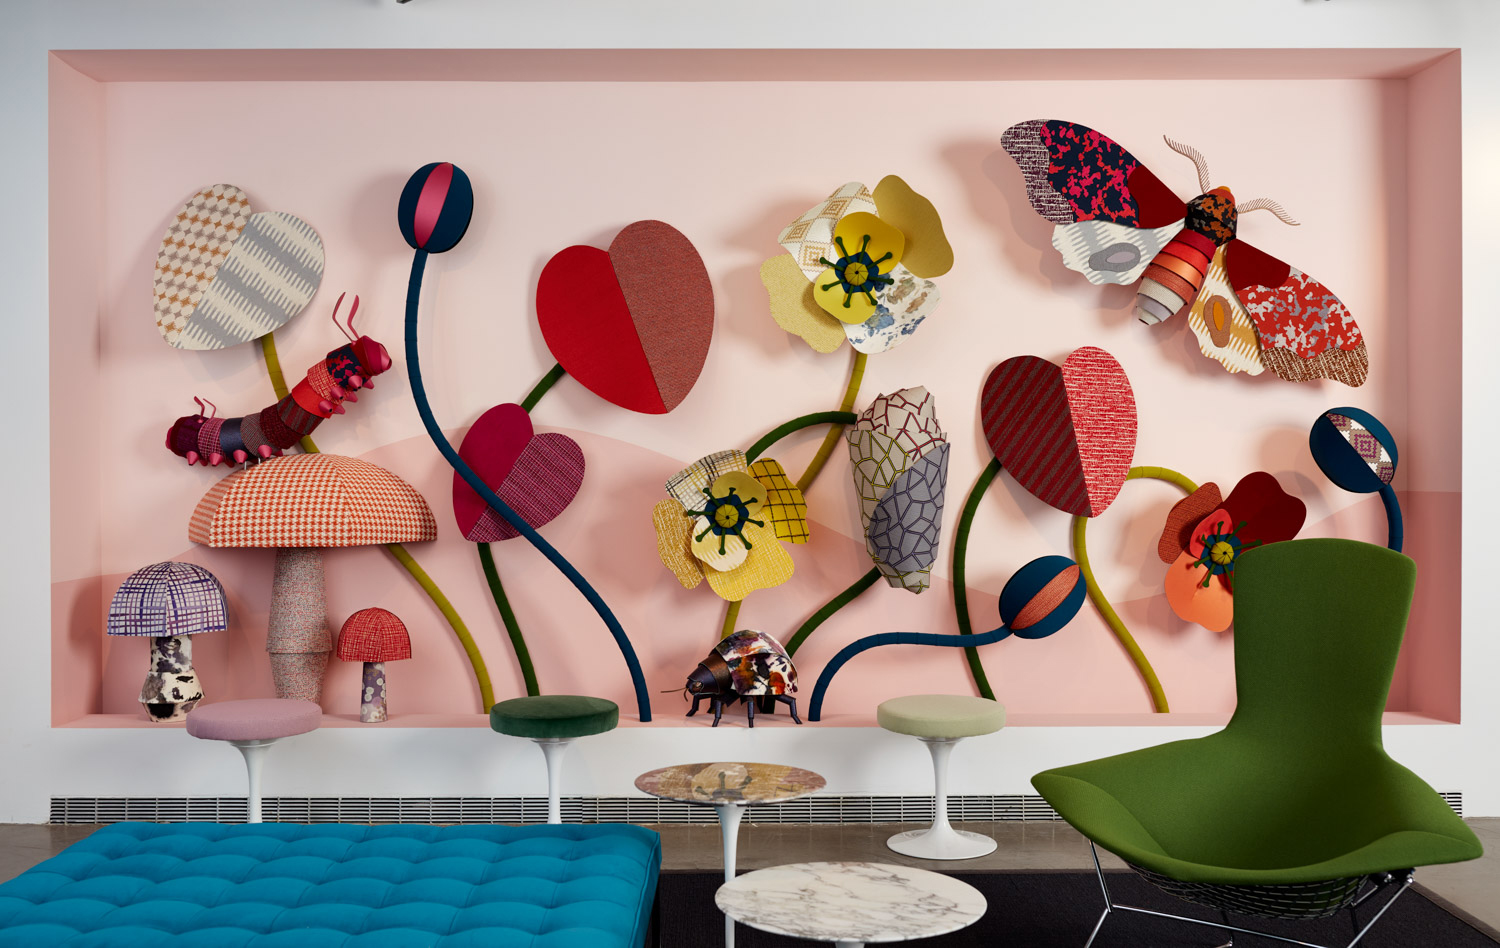 Eero Saarinen ontwierp voor Knoll Studio ook allerlei bijpassende meubels rondom de Tulip Eettafel. Van stoelen tot aan krukjes met vrolijk gekleurde zitvlakken.